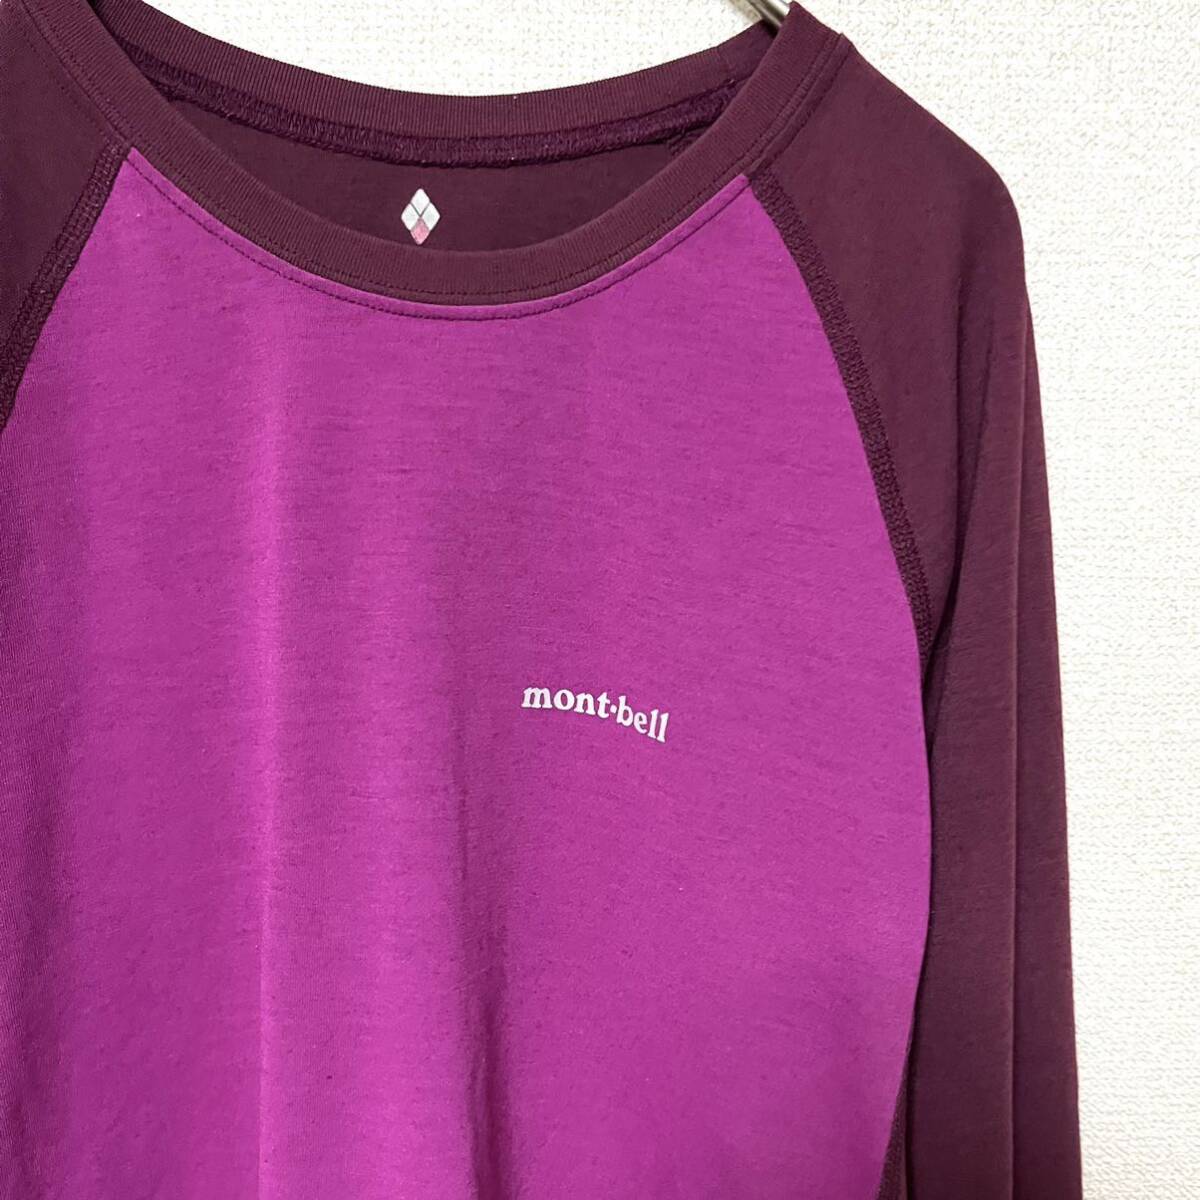 モンベル mont-bell 長袖 Tシャツ★レディースS★ピンク 紫 小豆色 インナーウェア ロンT カットソー ポリエステル製100% アウトドア 登山の画像3